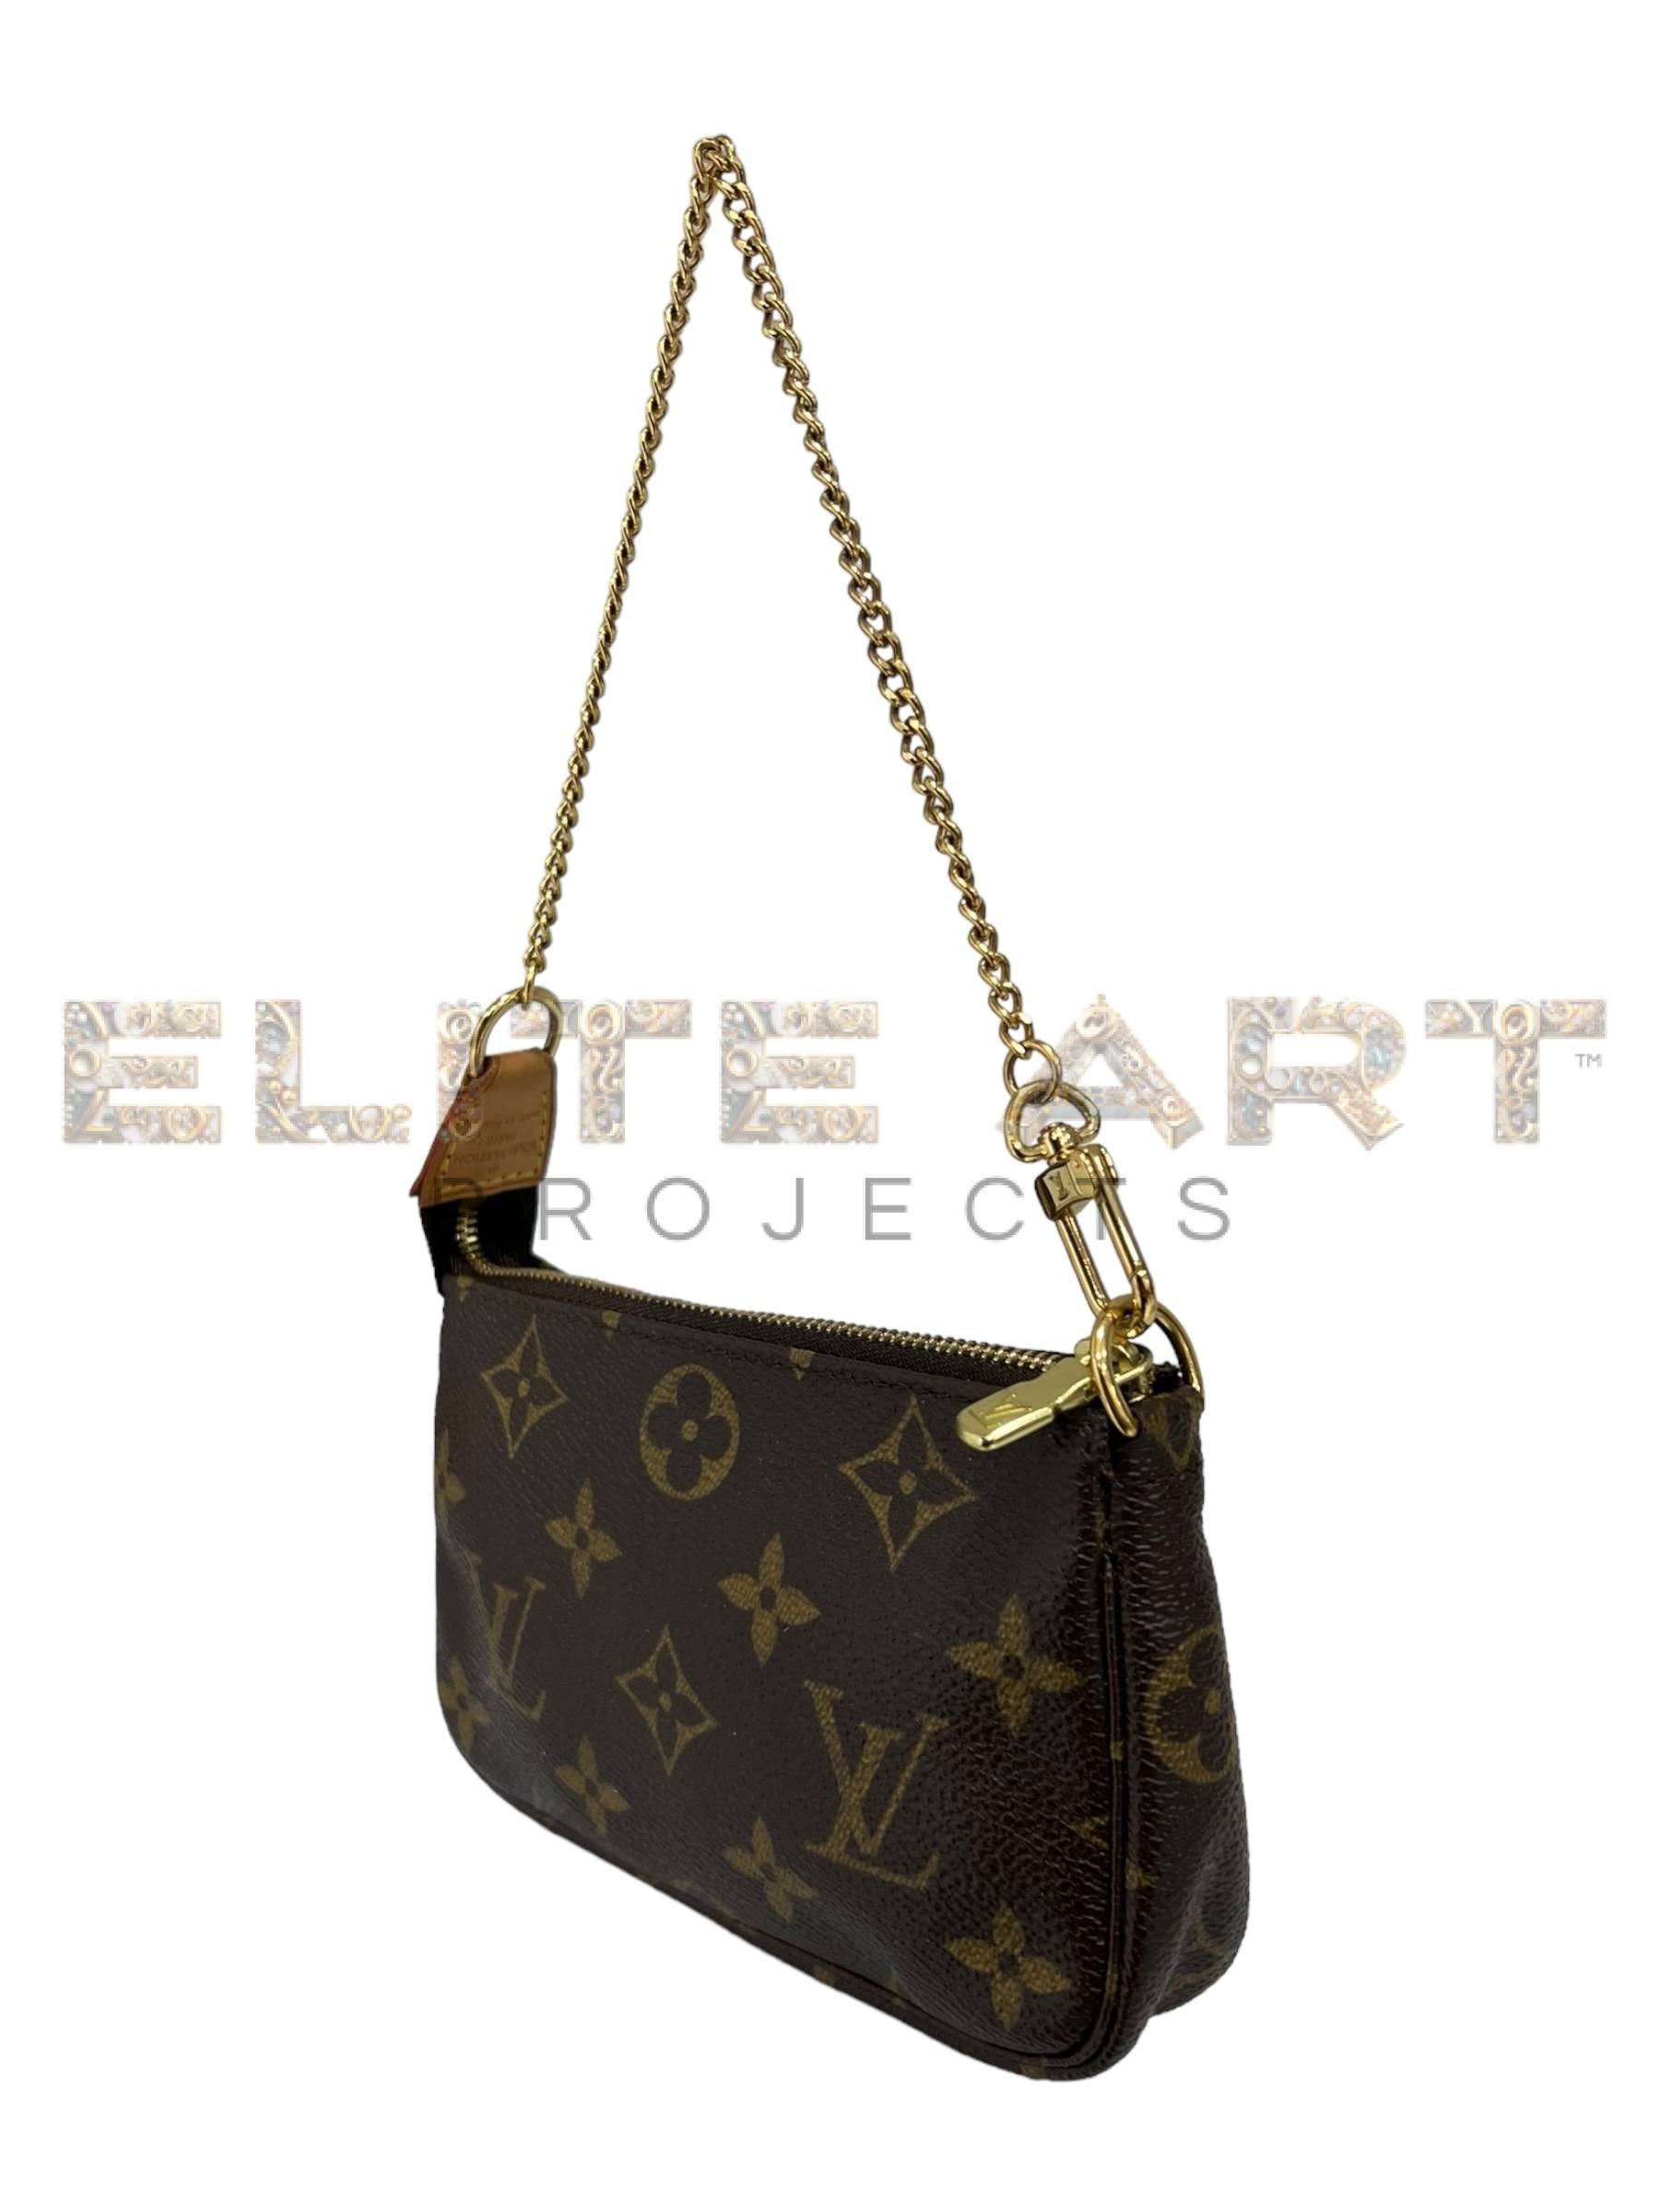 Louis Vuitton pochette, Accessoires model, Mini size, monogram canvas, golden hardware, Elite Art Projects, ELS Fashion TV